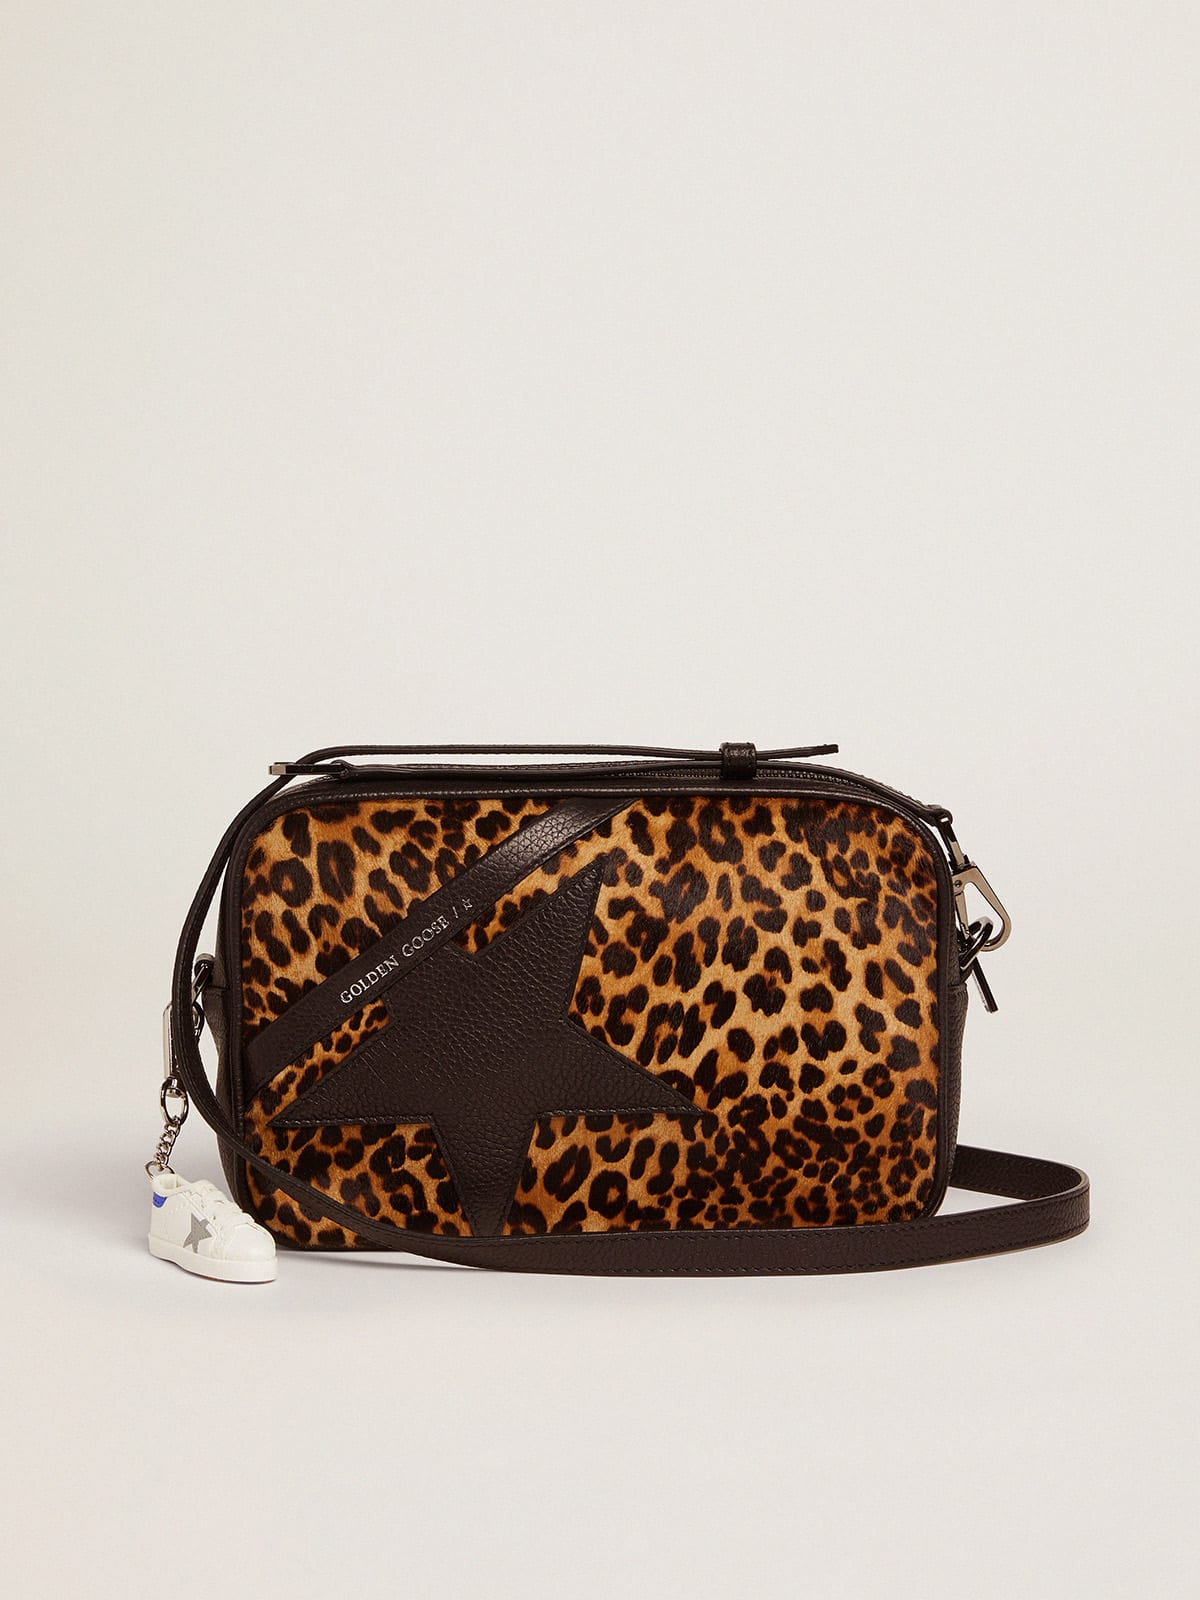 Star Bag in leopard-print pony skin